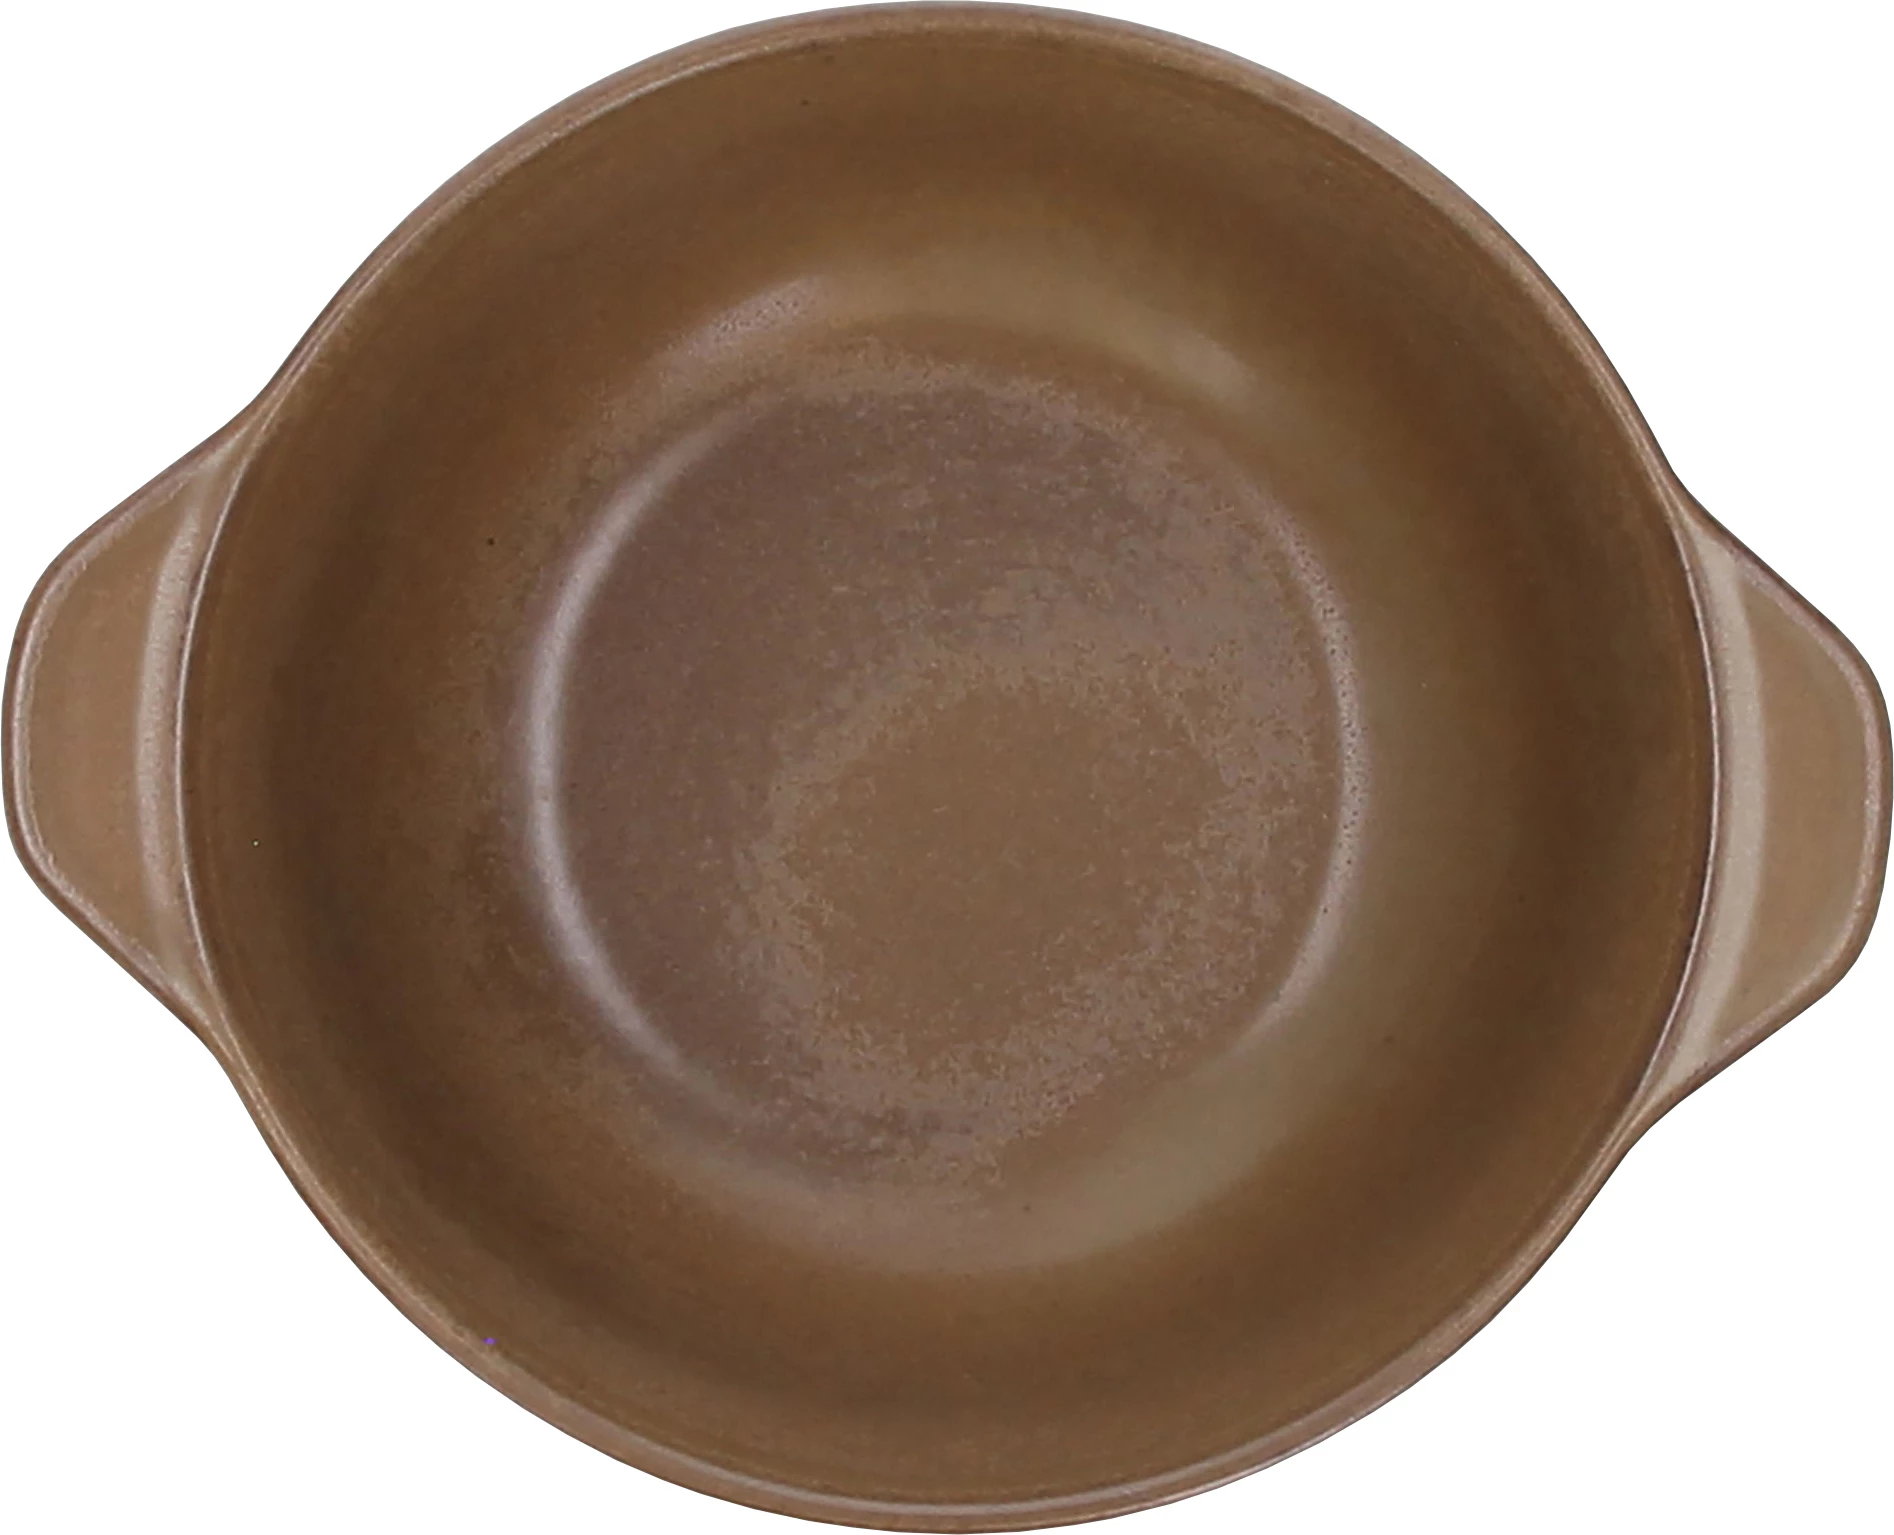 Tognana Terracotta skål med laf, brun, 66 cl, ø15 cm